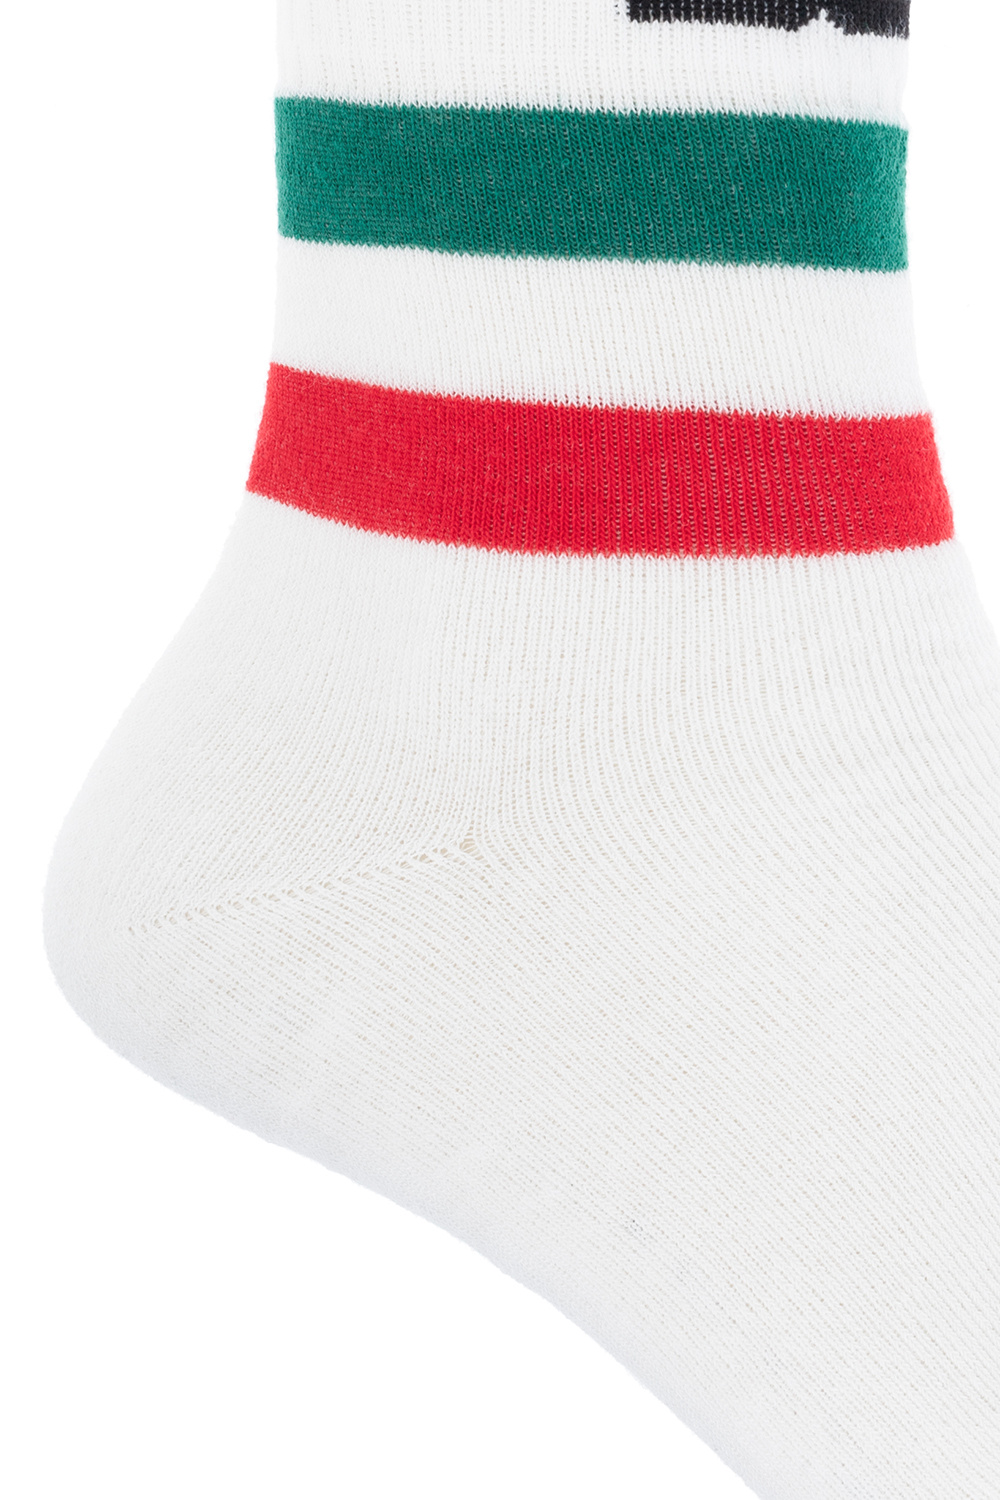 Dolce & Gabbana Socks with logo